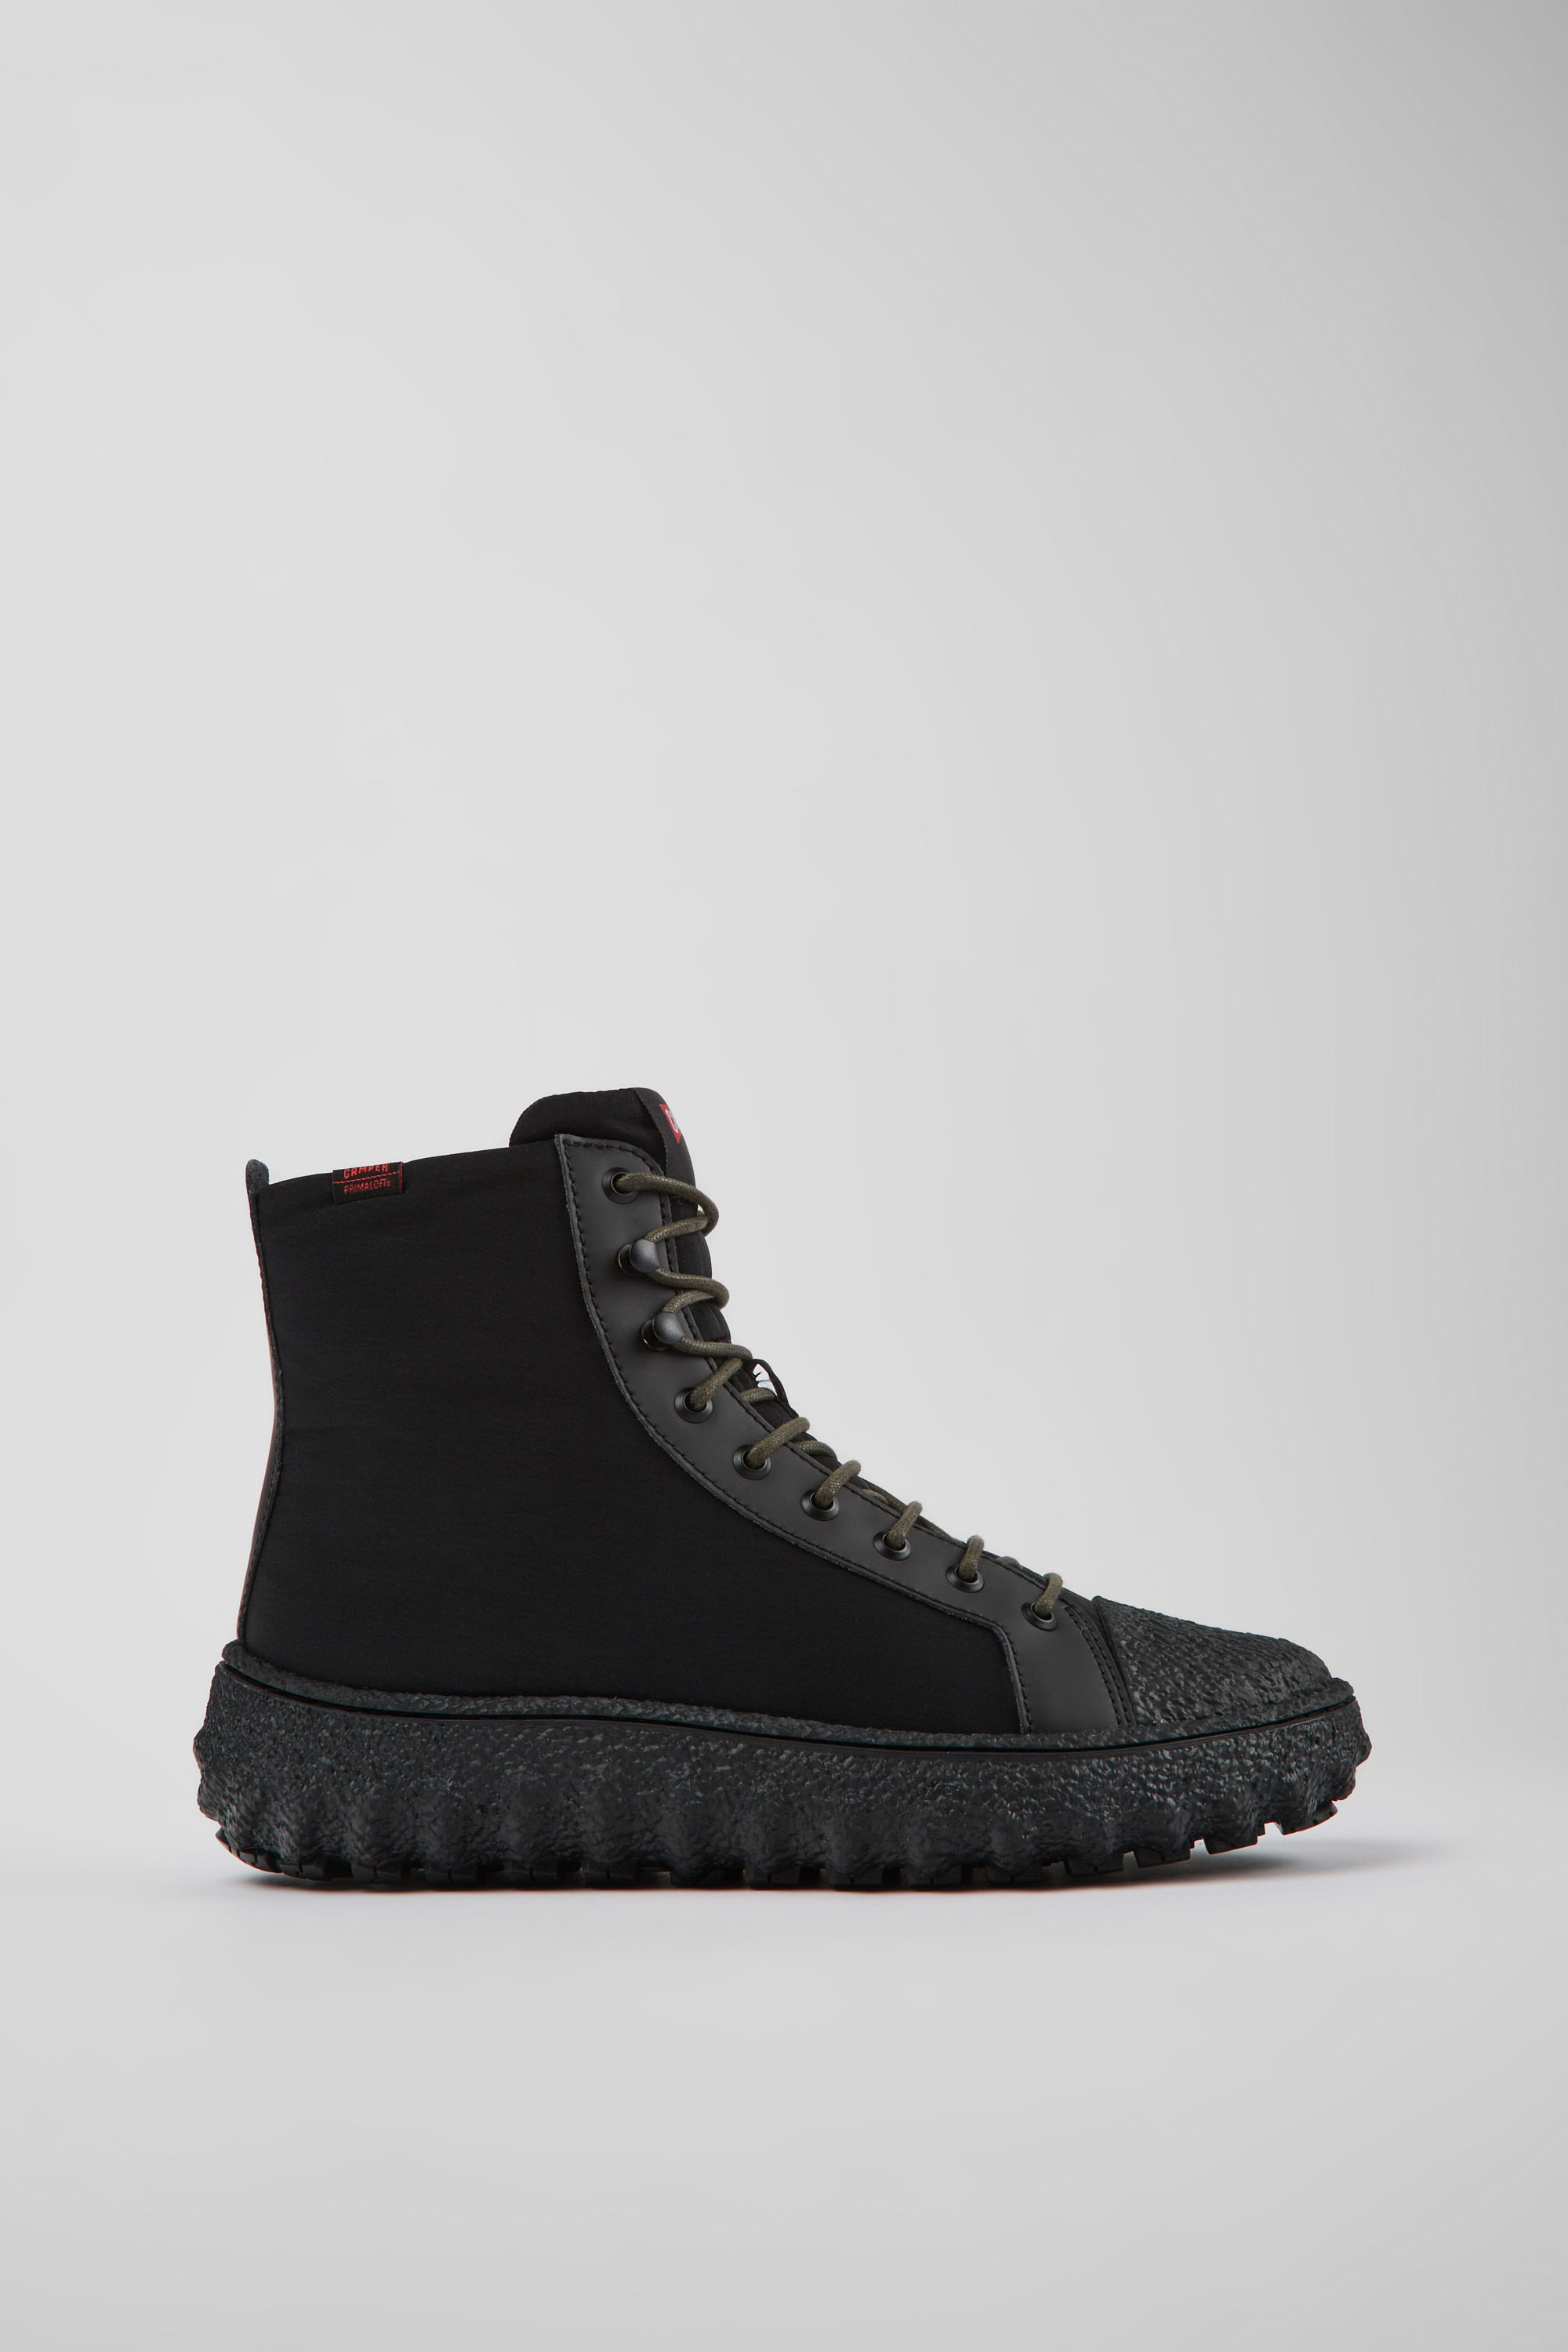 kampagne lol træ Ground Black Ankle Boots for Men - Autumn/Winter collection - Camper USA